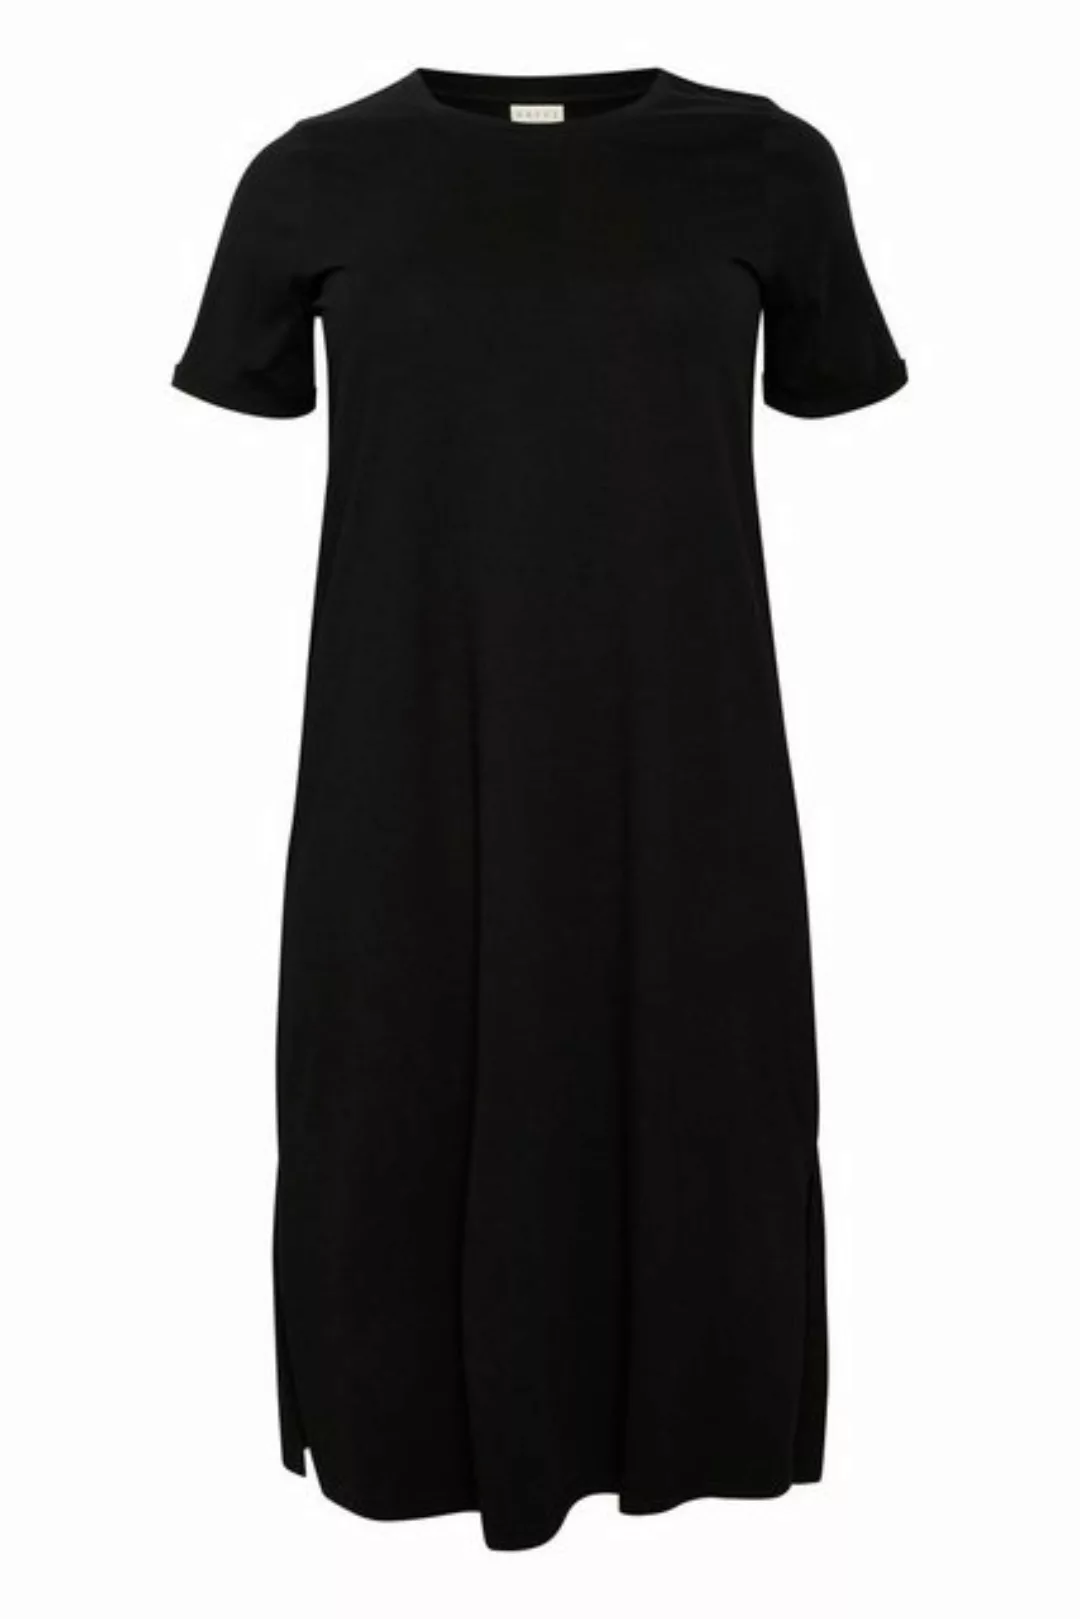 KAFFE Curve Jerseykleid Kleid KCcaline Große Größen günstig online kaufen